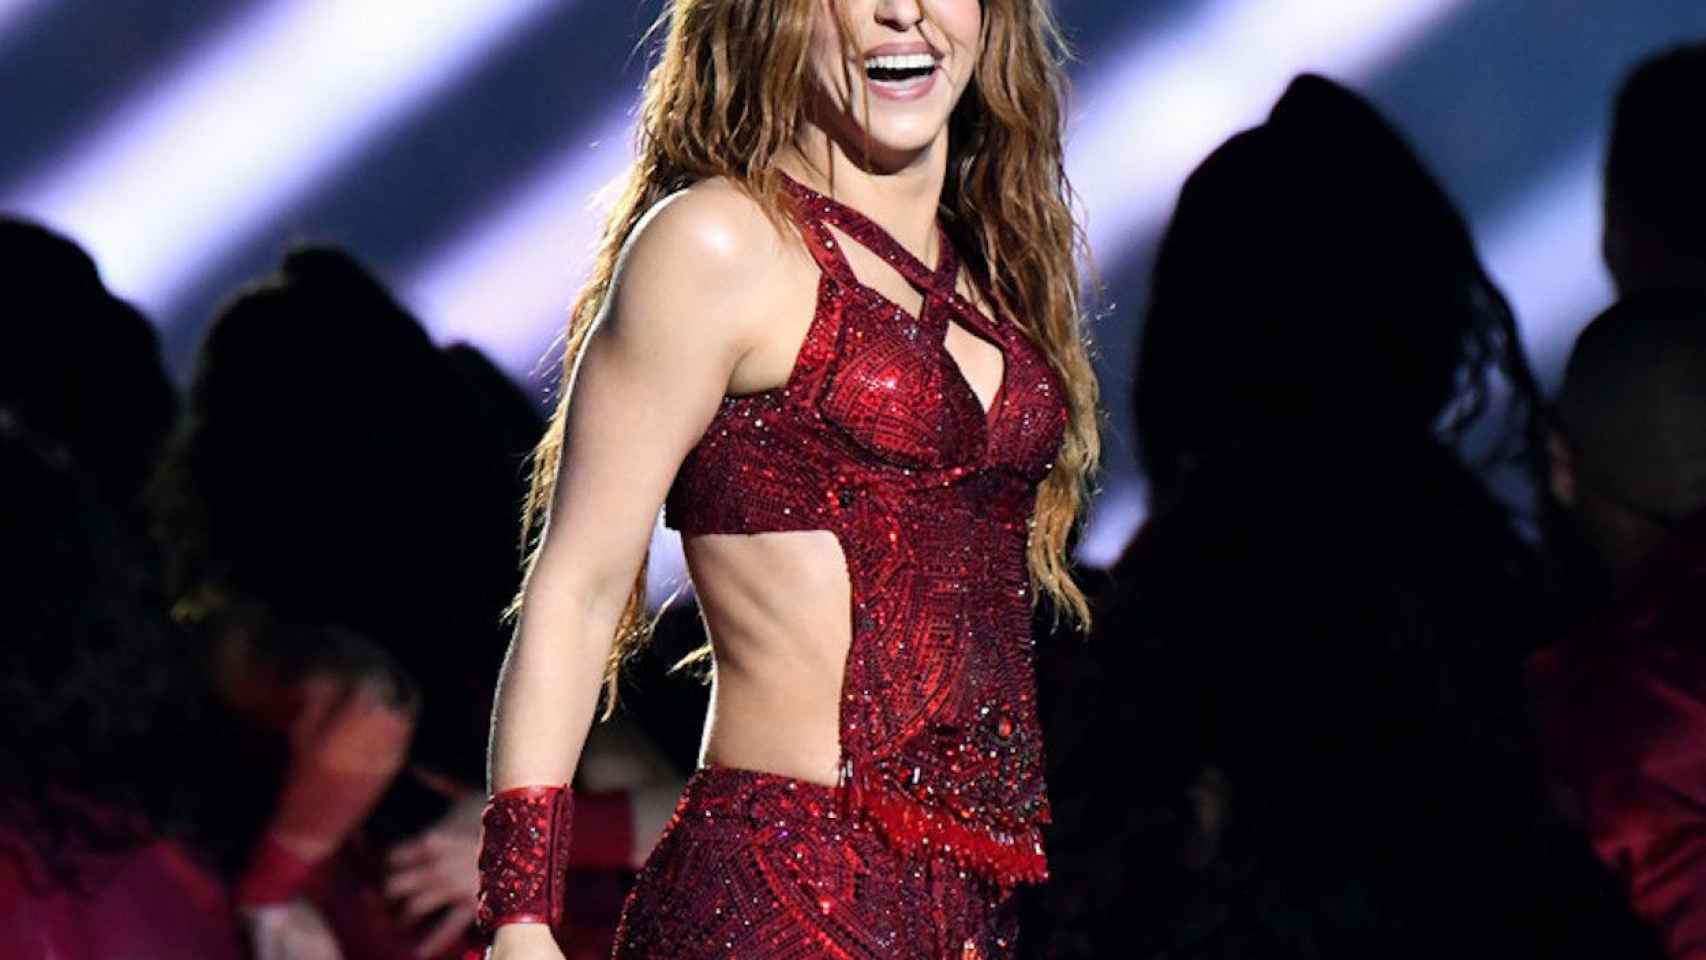 Shakira en su actuación en la Superbowl